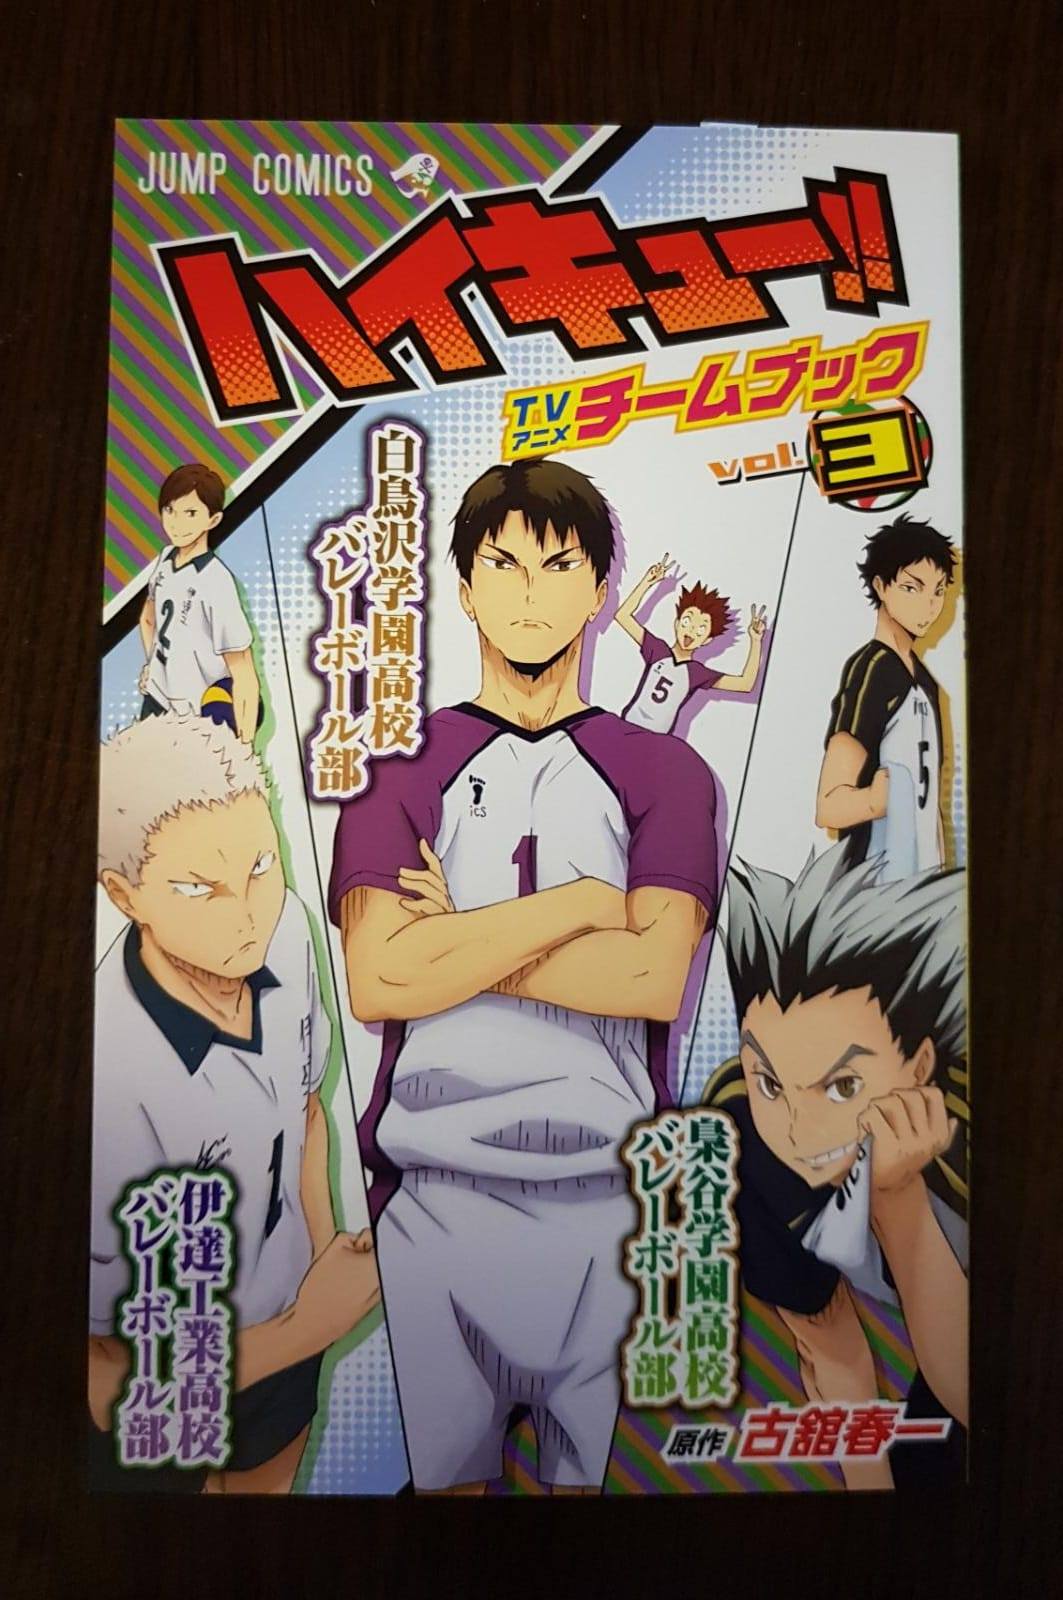 Haikyu!! Team Book Vol. 3 Fukurodani, Shiratorizawa, Dateko